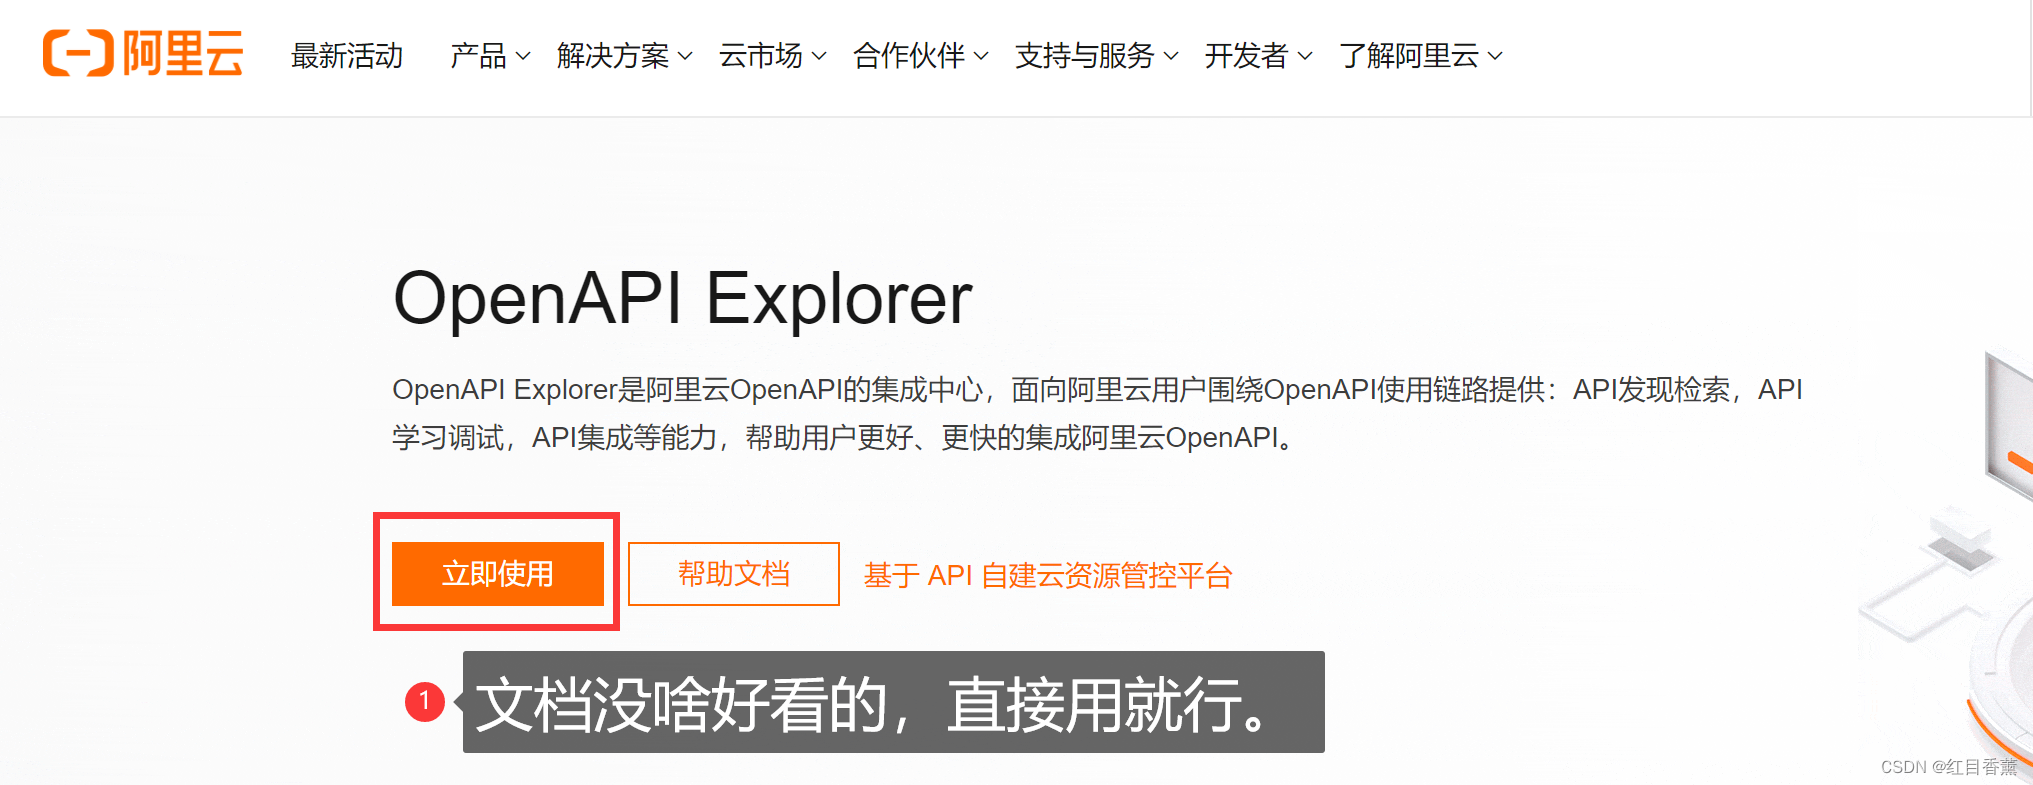 阿里云——OpenAPI使用——短信服务